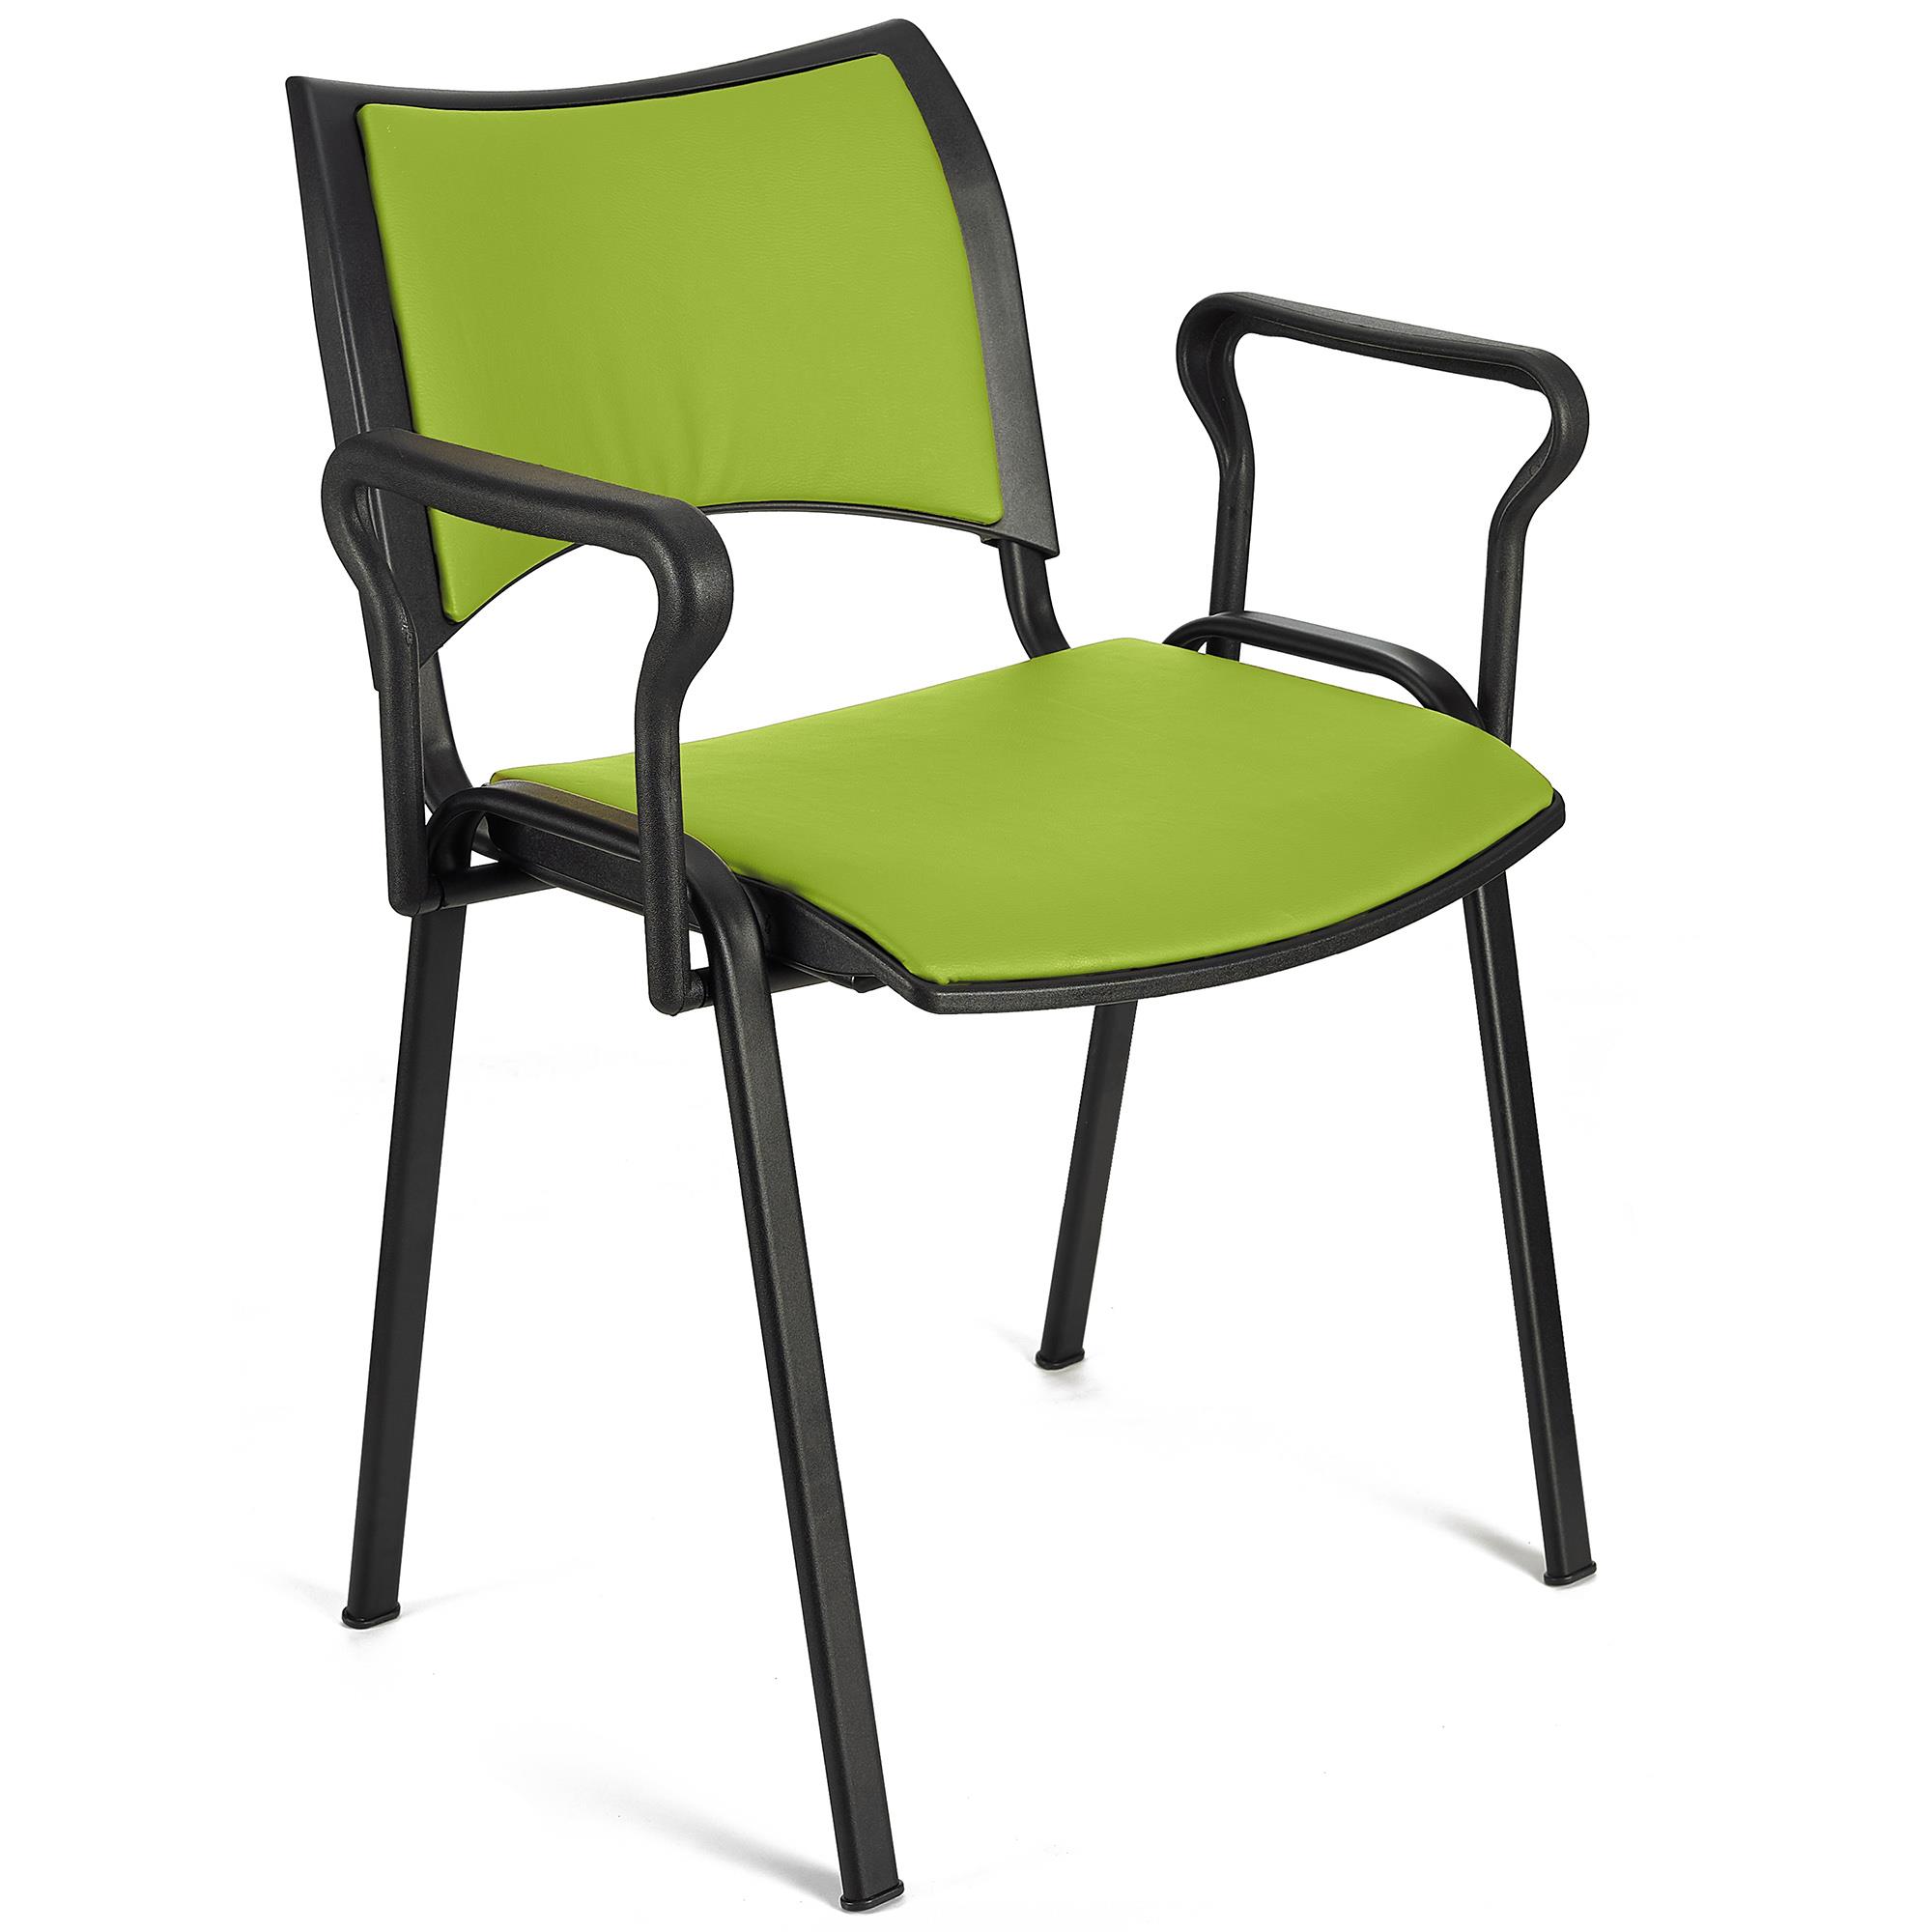 Cadeira de Visita ROMEL PELE COM BRAÇOS, Empilhável, Pernas Pretas, Verde